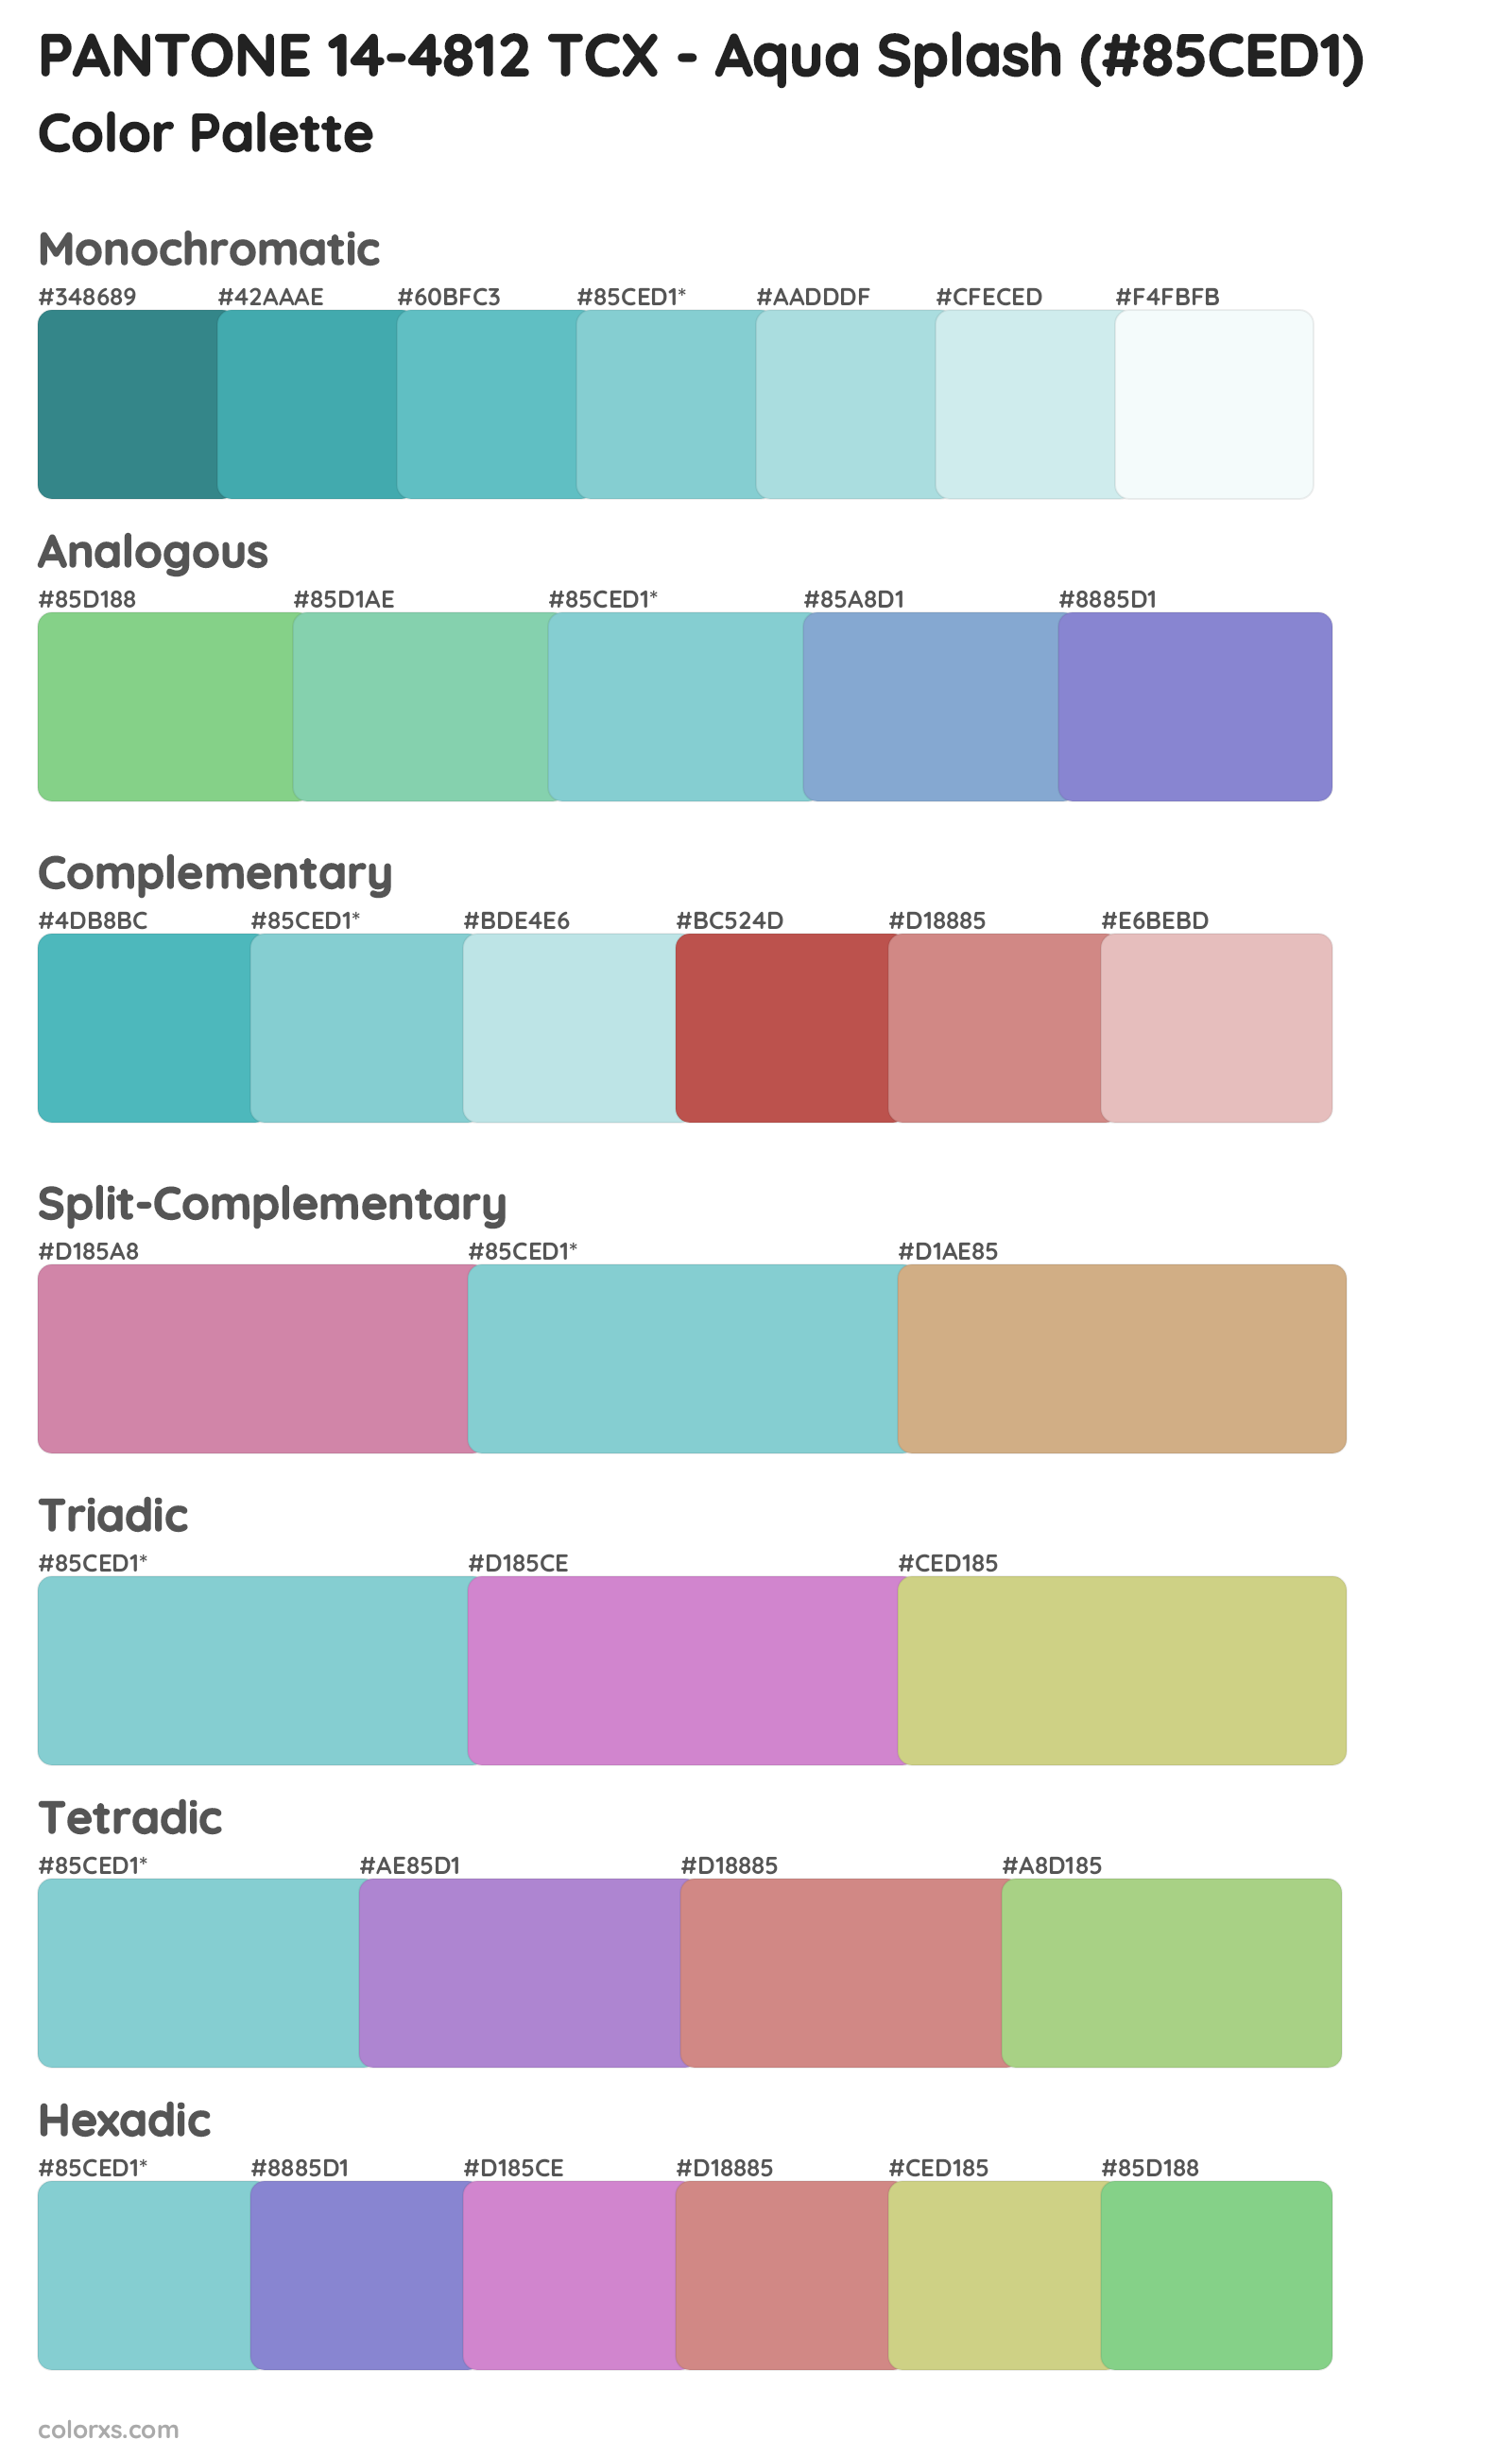 PANTONE 14-4812 TCX - Aqua Splash Color Scheme Palettes